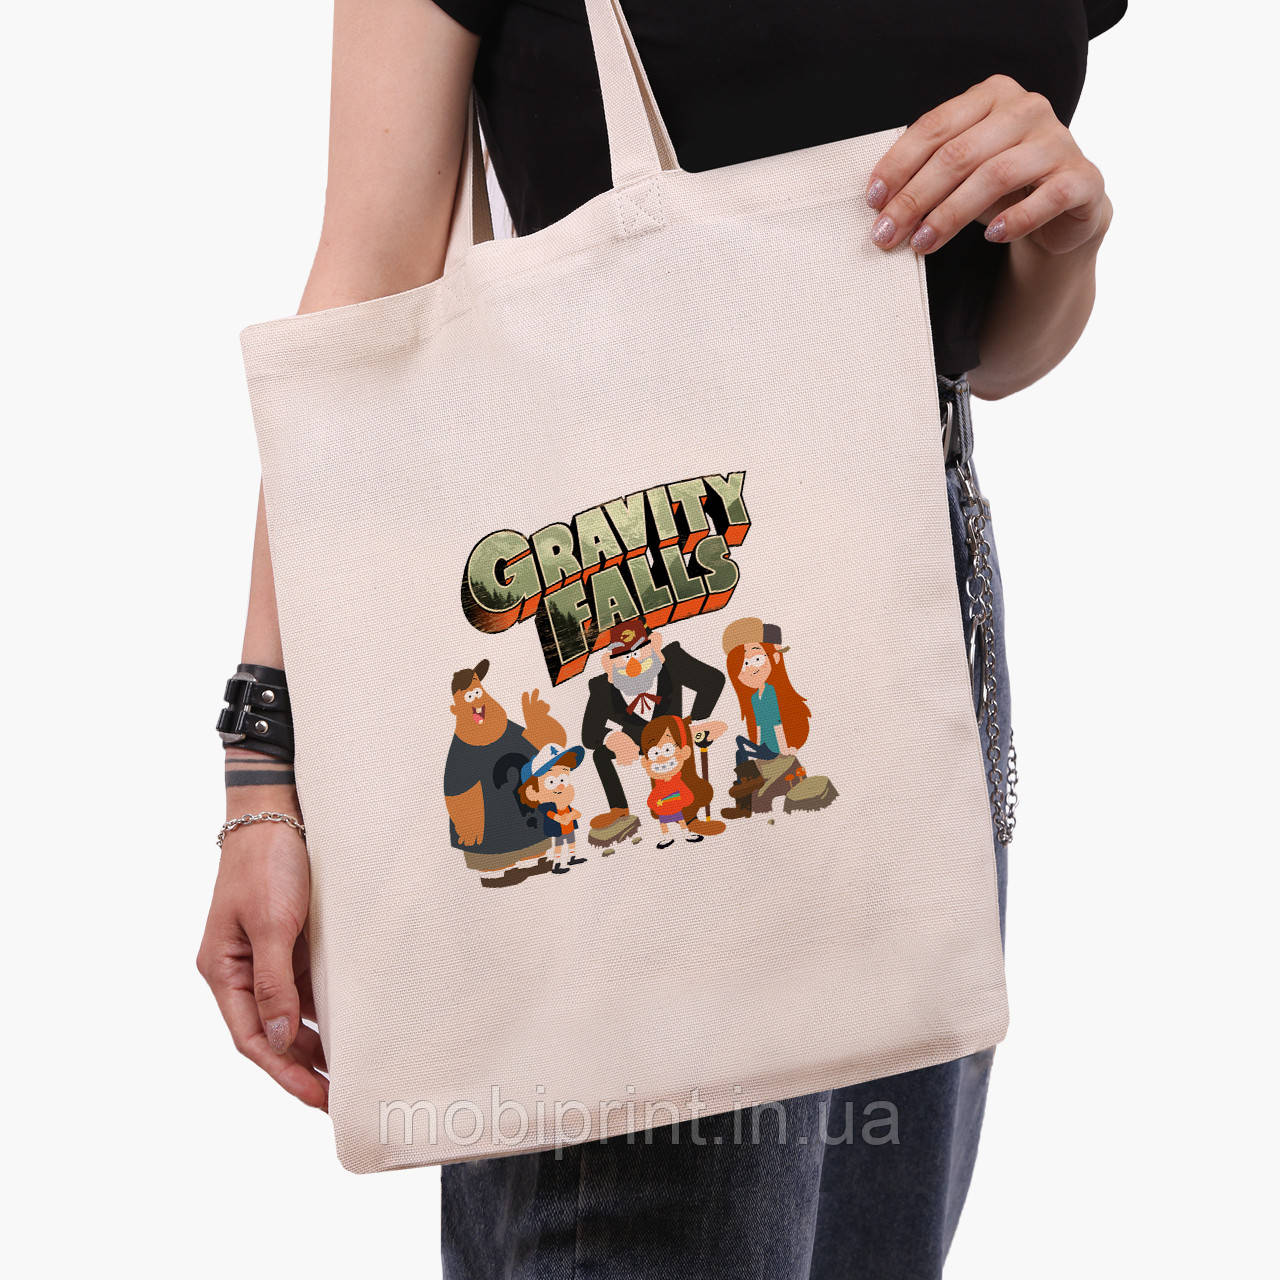 Еко сумка Гравіті Фолз (Gravity Falls) (9227-2628) бежева класична